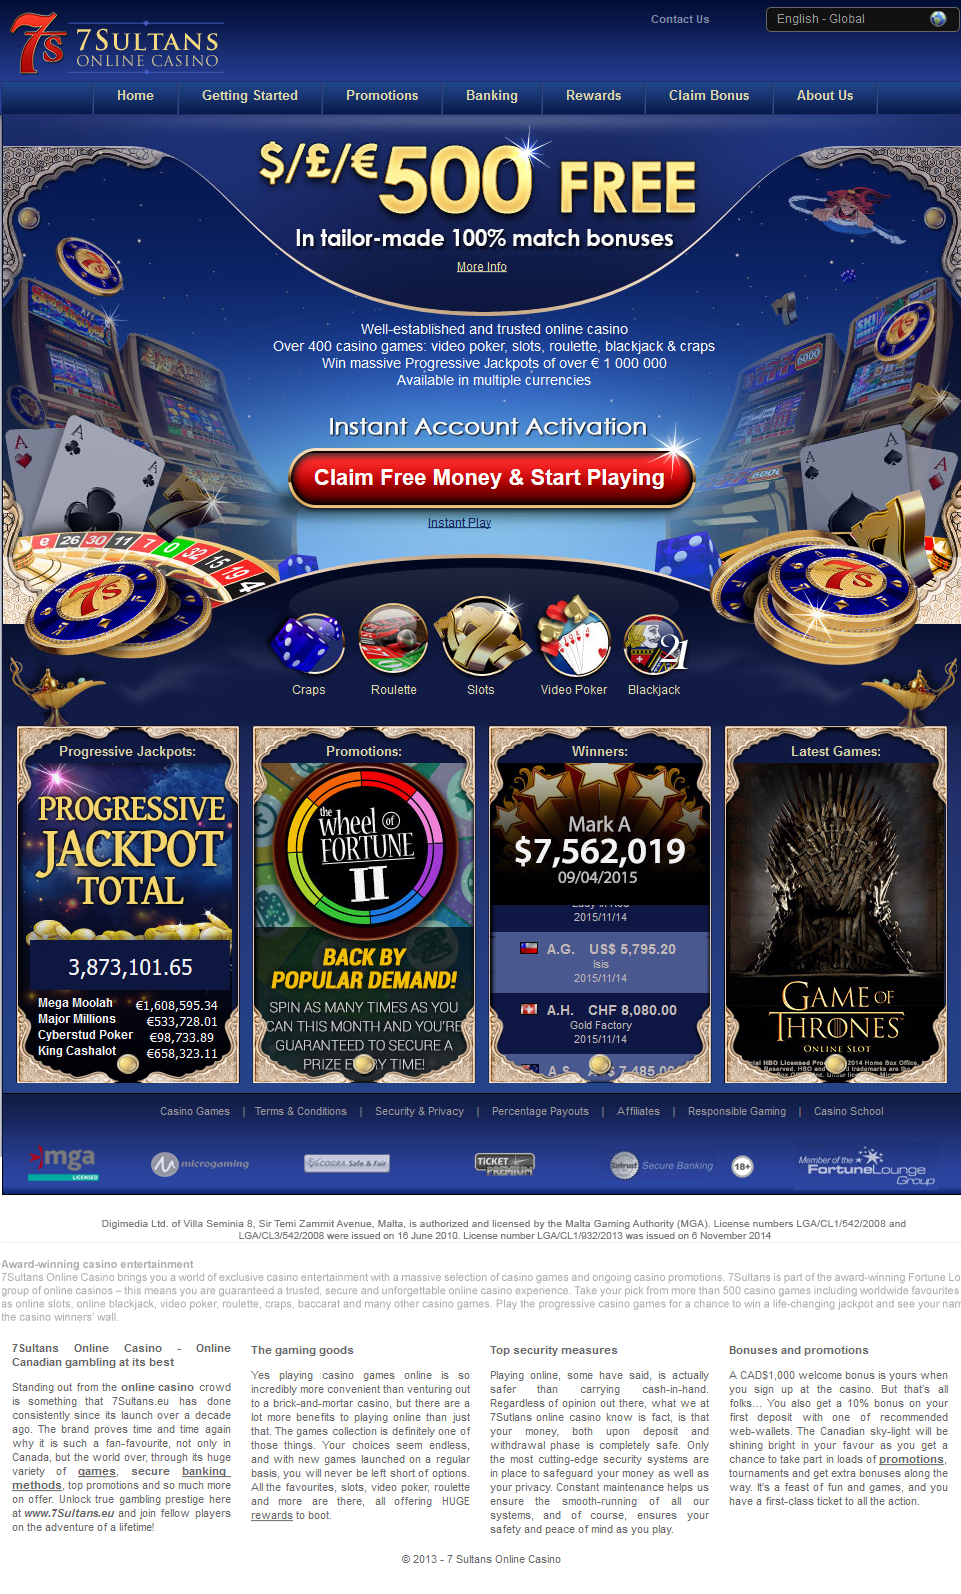 7 sultans casino bonus